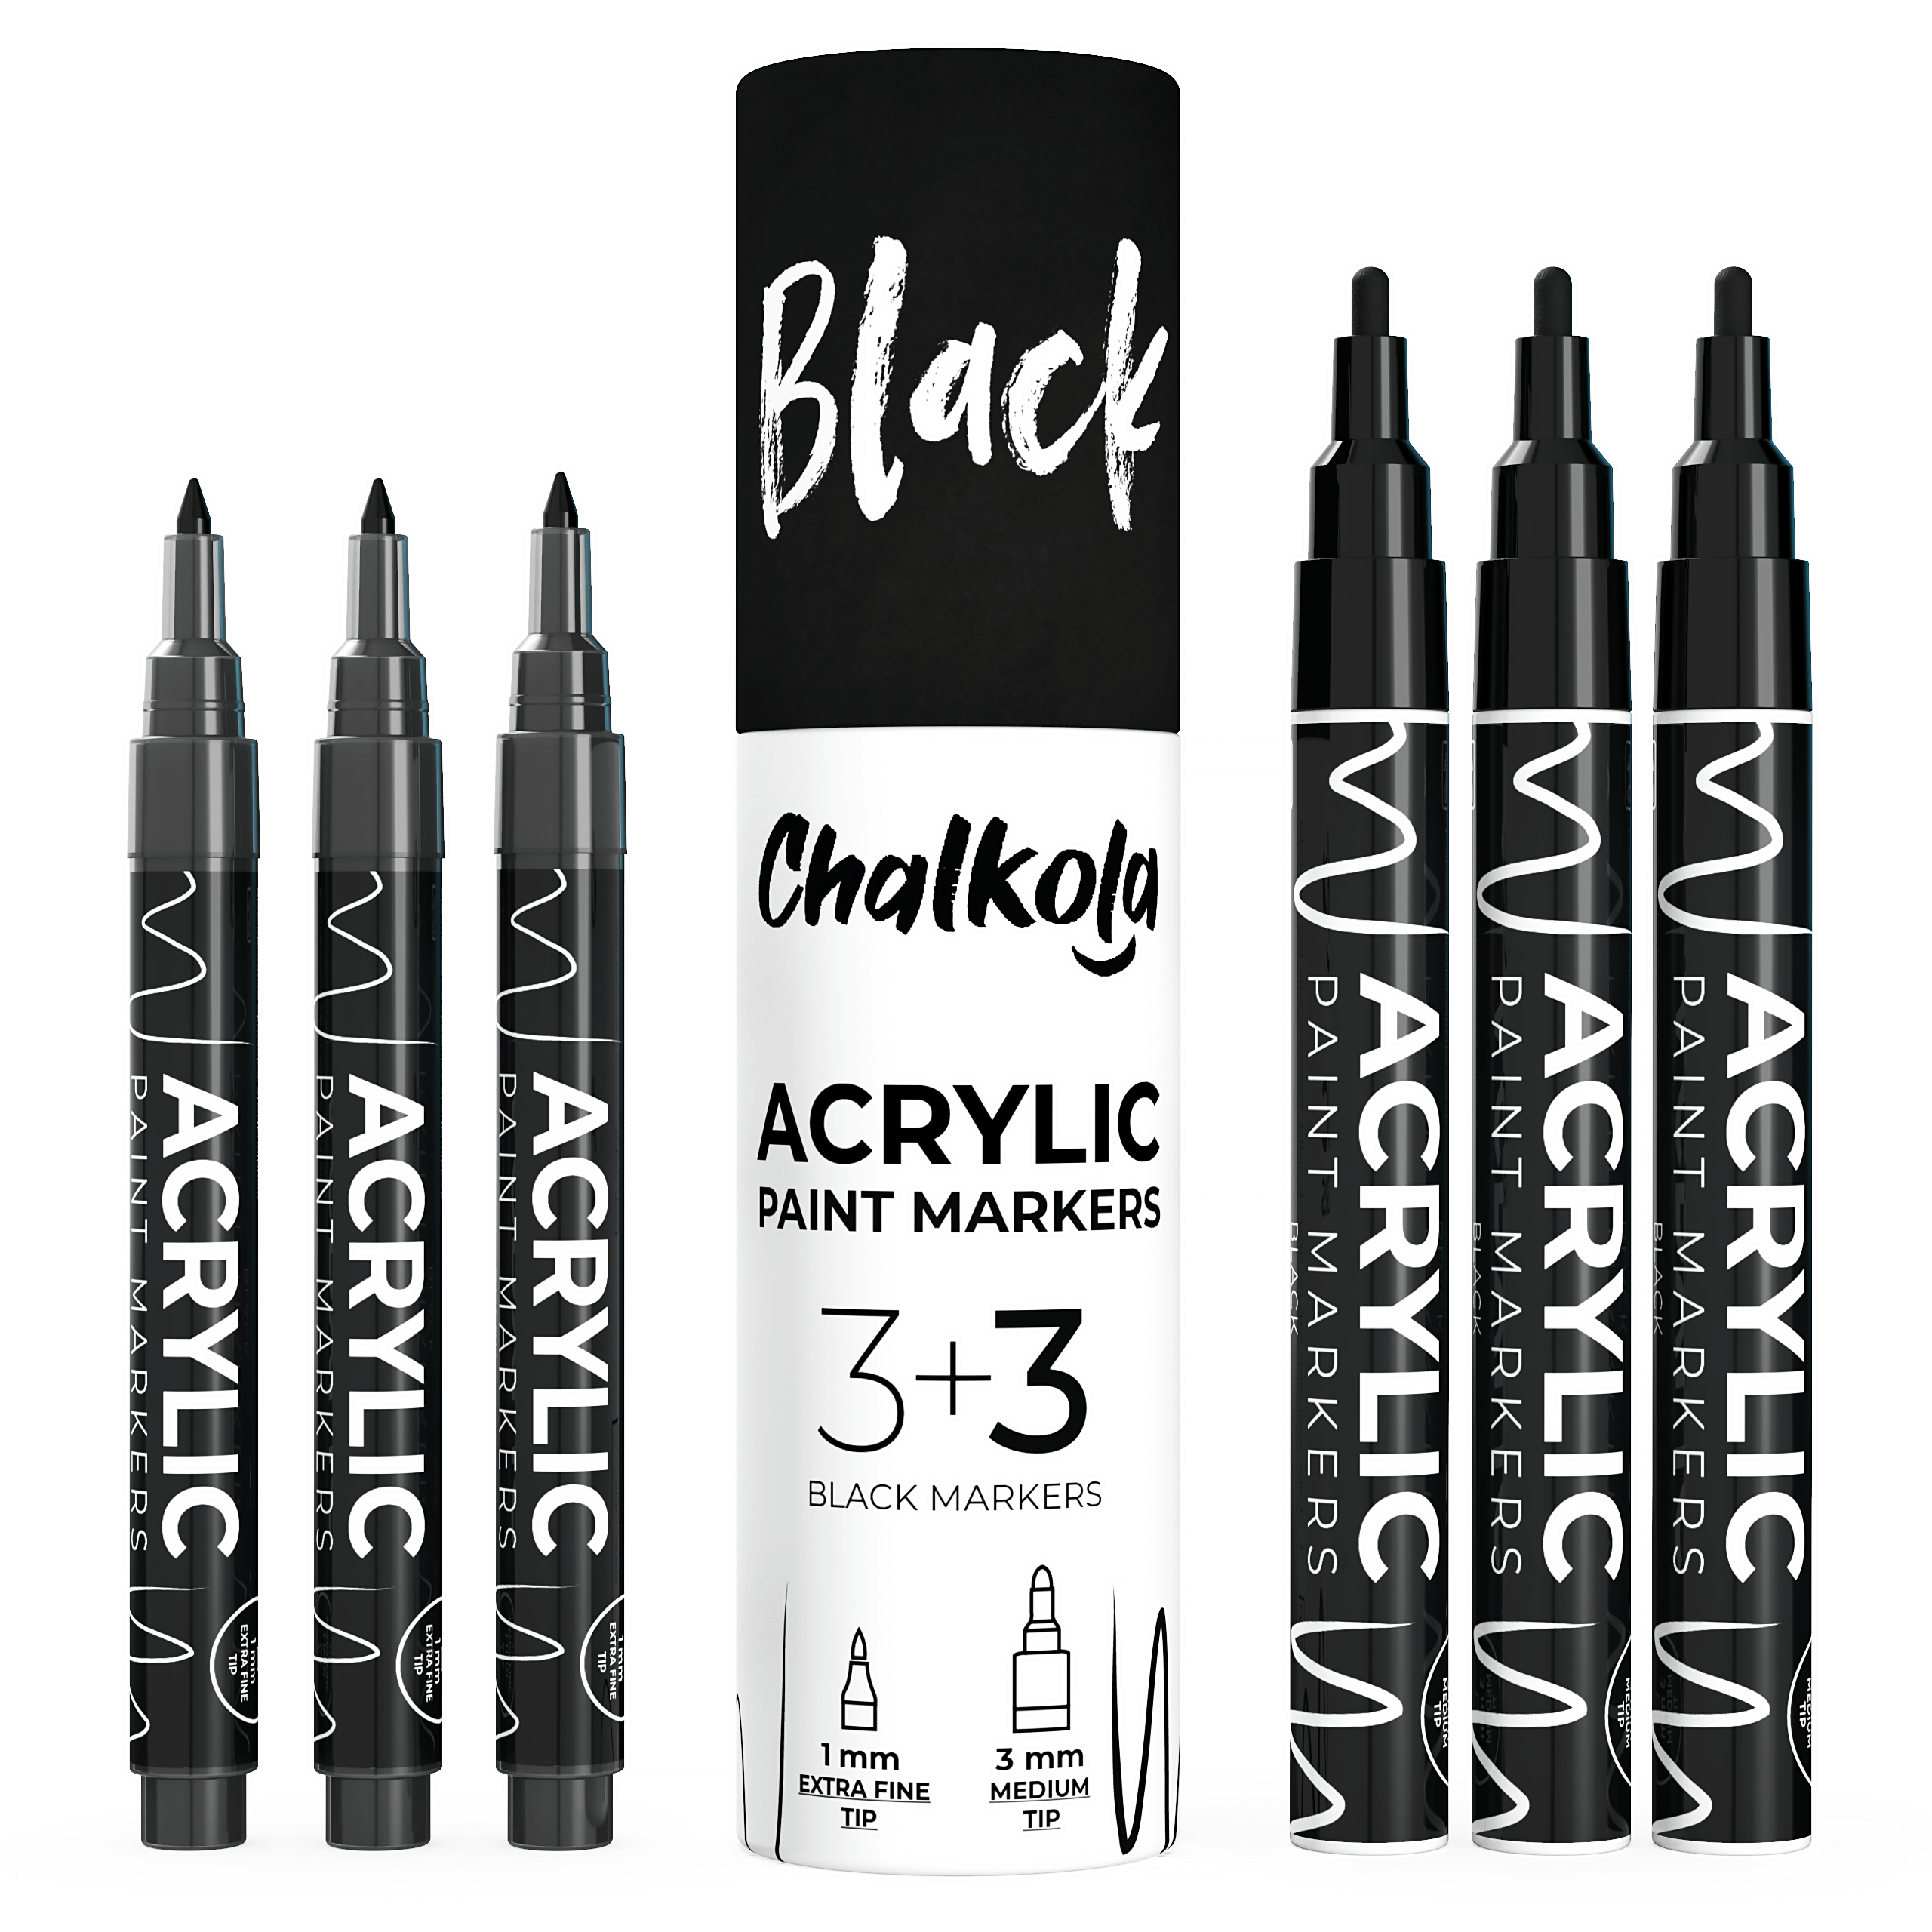 Acrylic Paint Pens,6 Pack Black White Paint Markers, Paint Pens